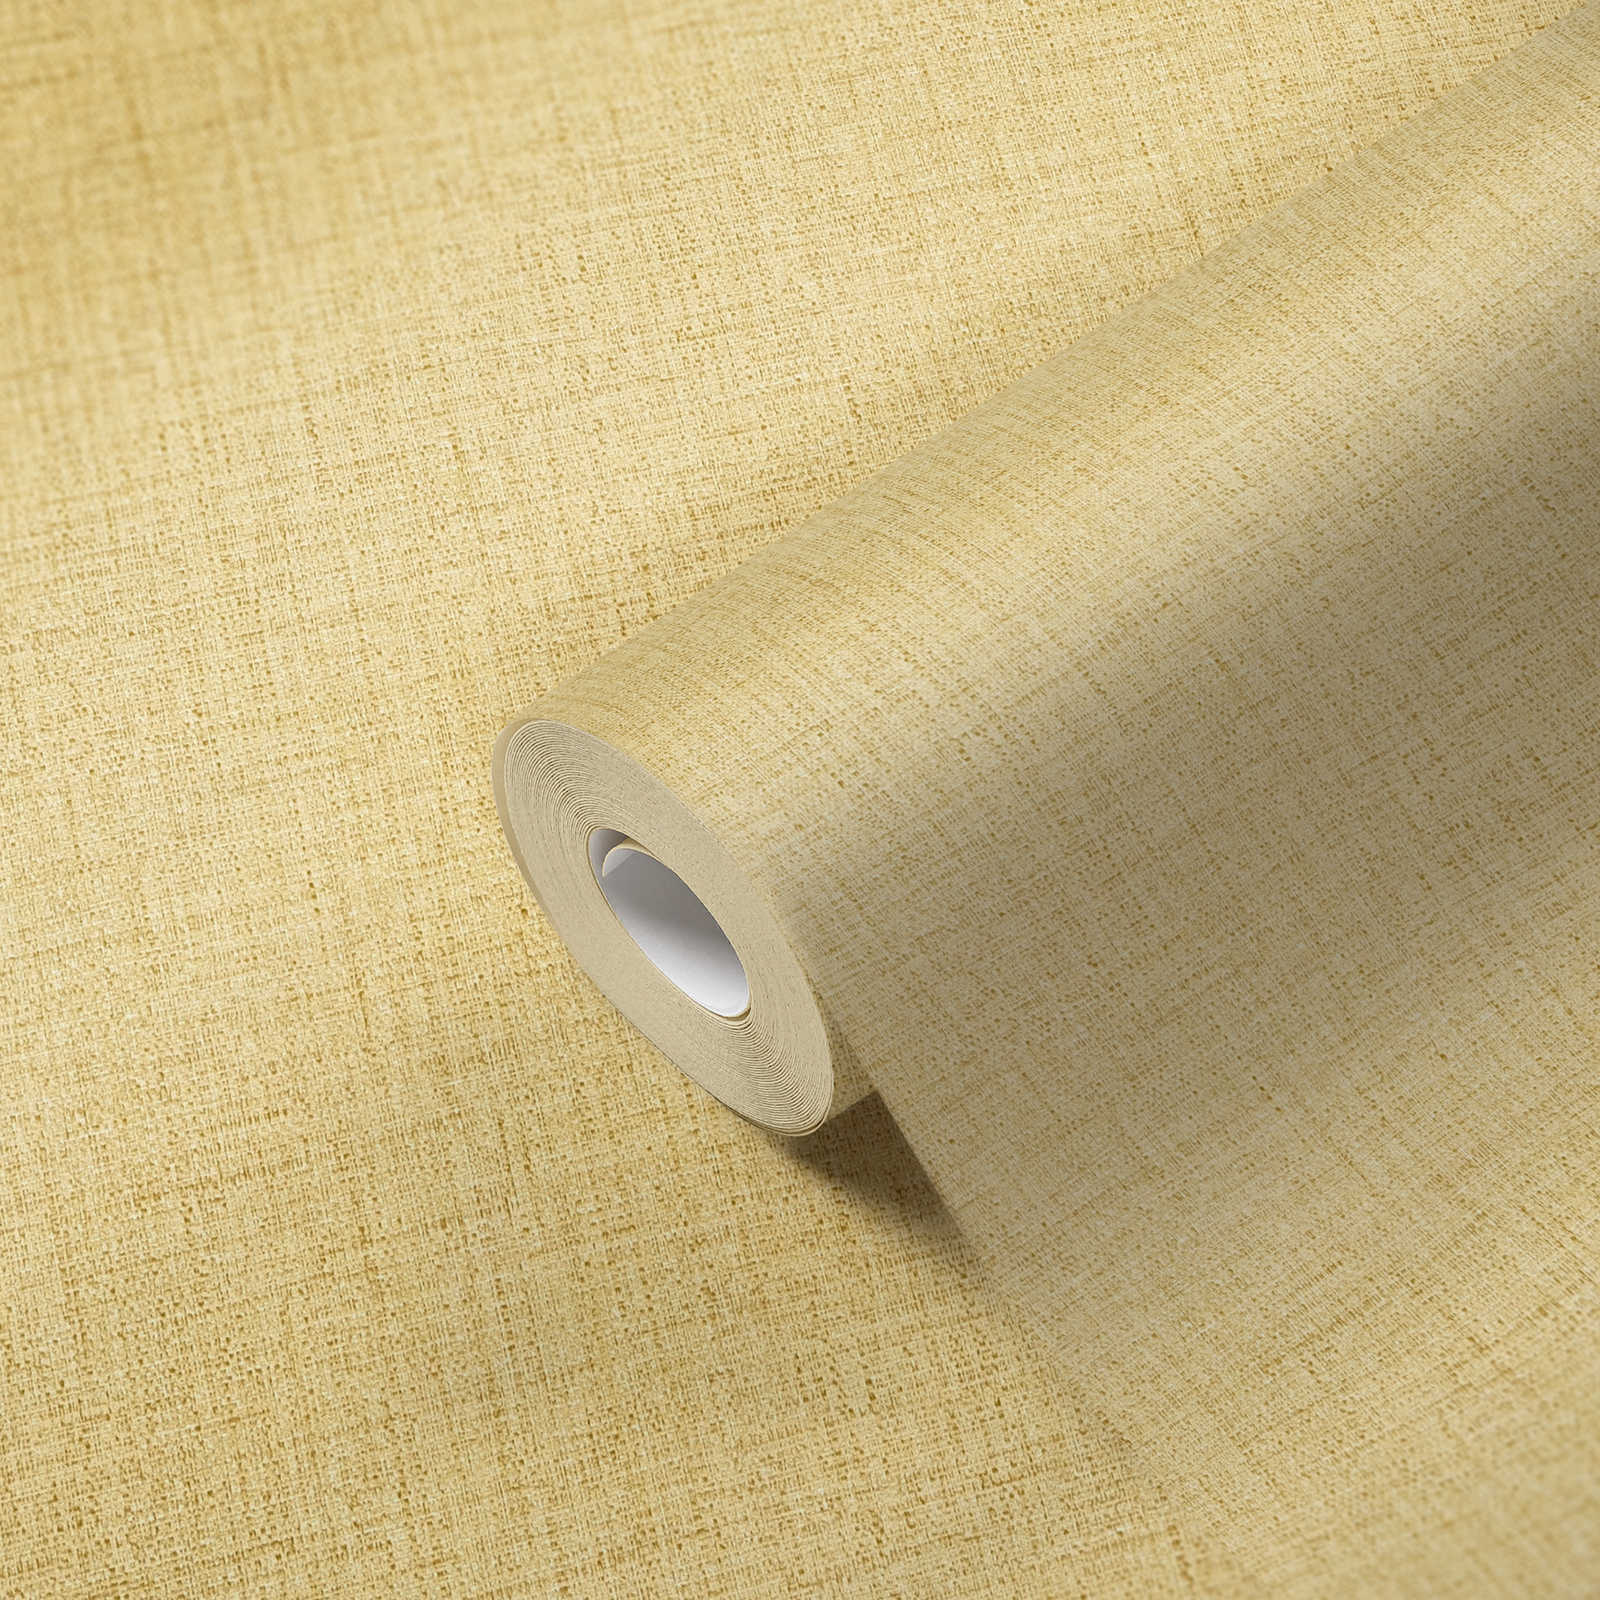             Papier peint aspect textile chiné avec structure - jaune
        